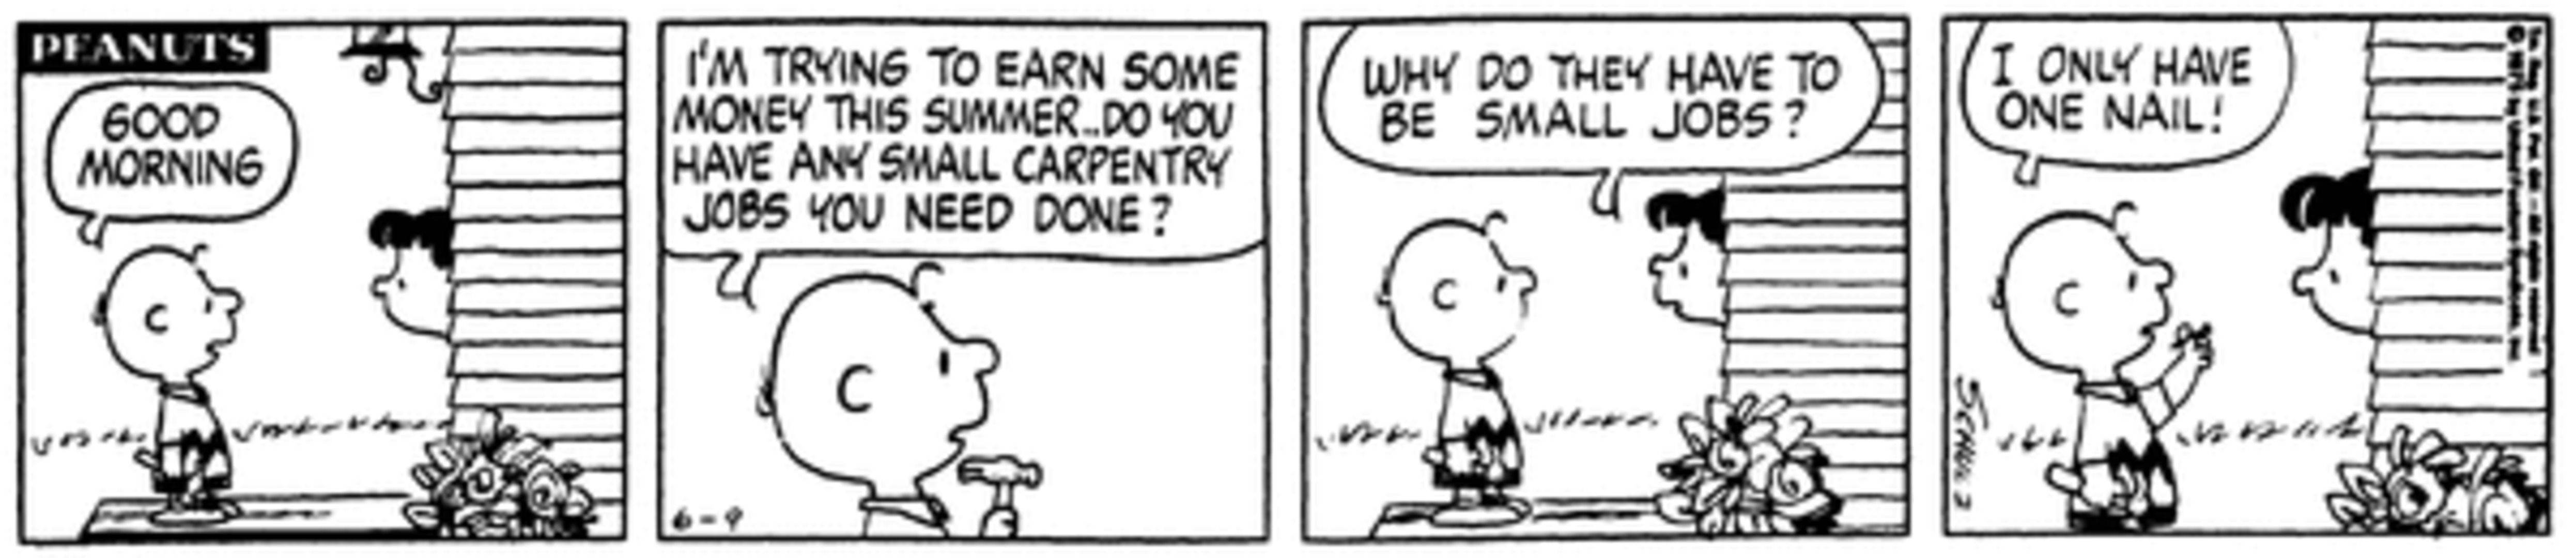 Peanuts Summer, Charlie Brown em uma casa perguntando se eles precisam de um pequeno trabalho de carpintaria.